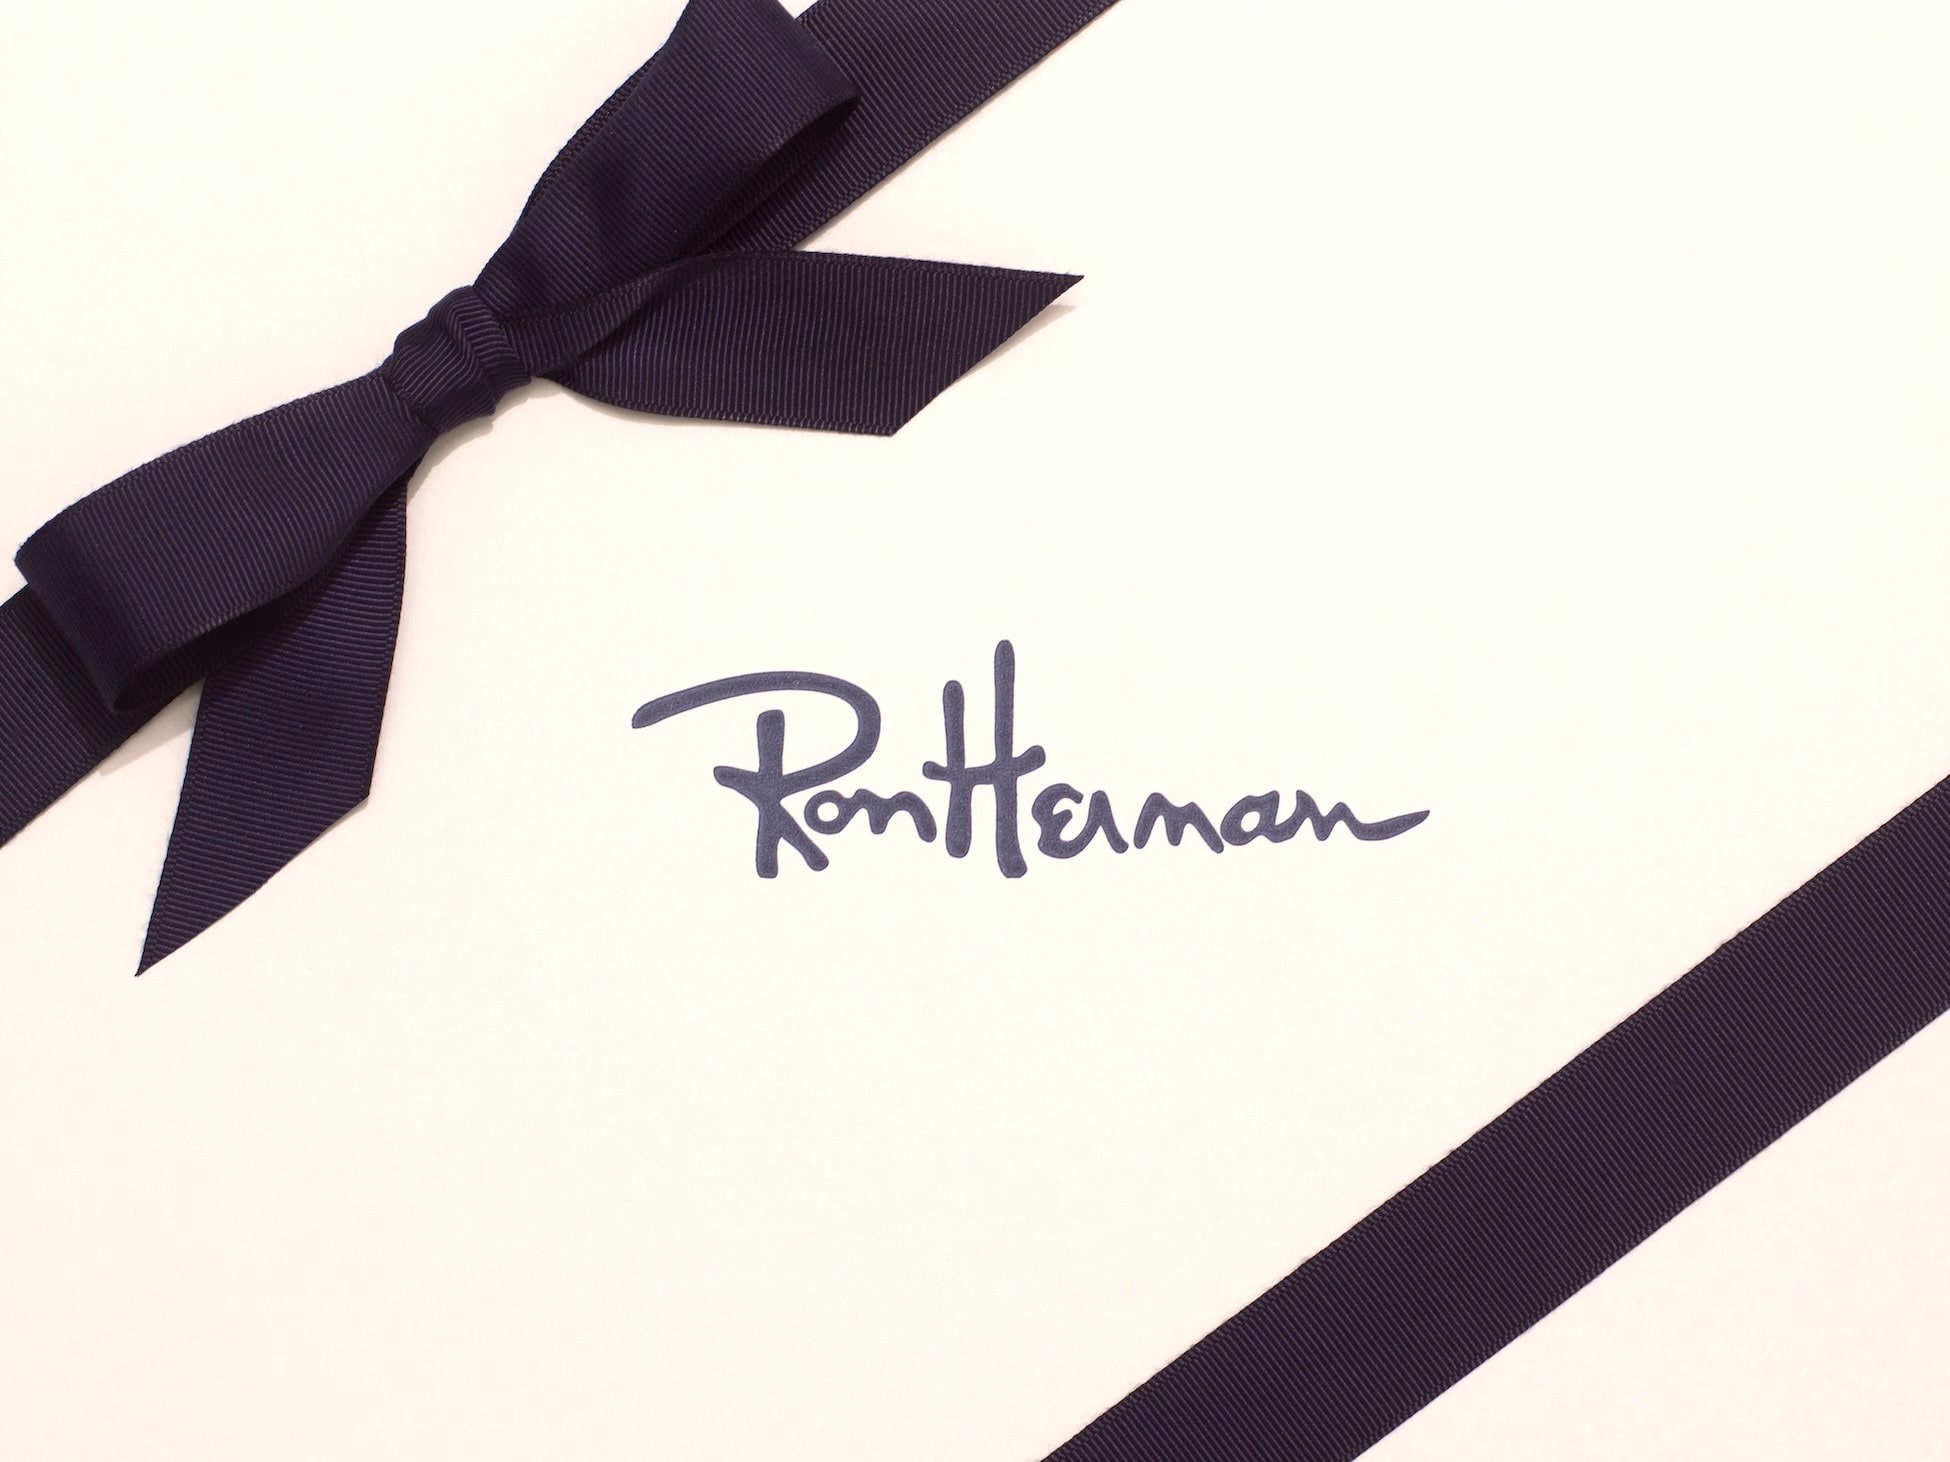 Ron Herman Men Holiday Gift